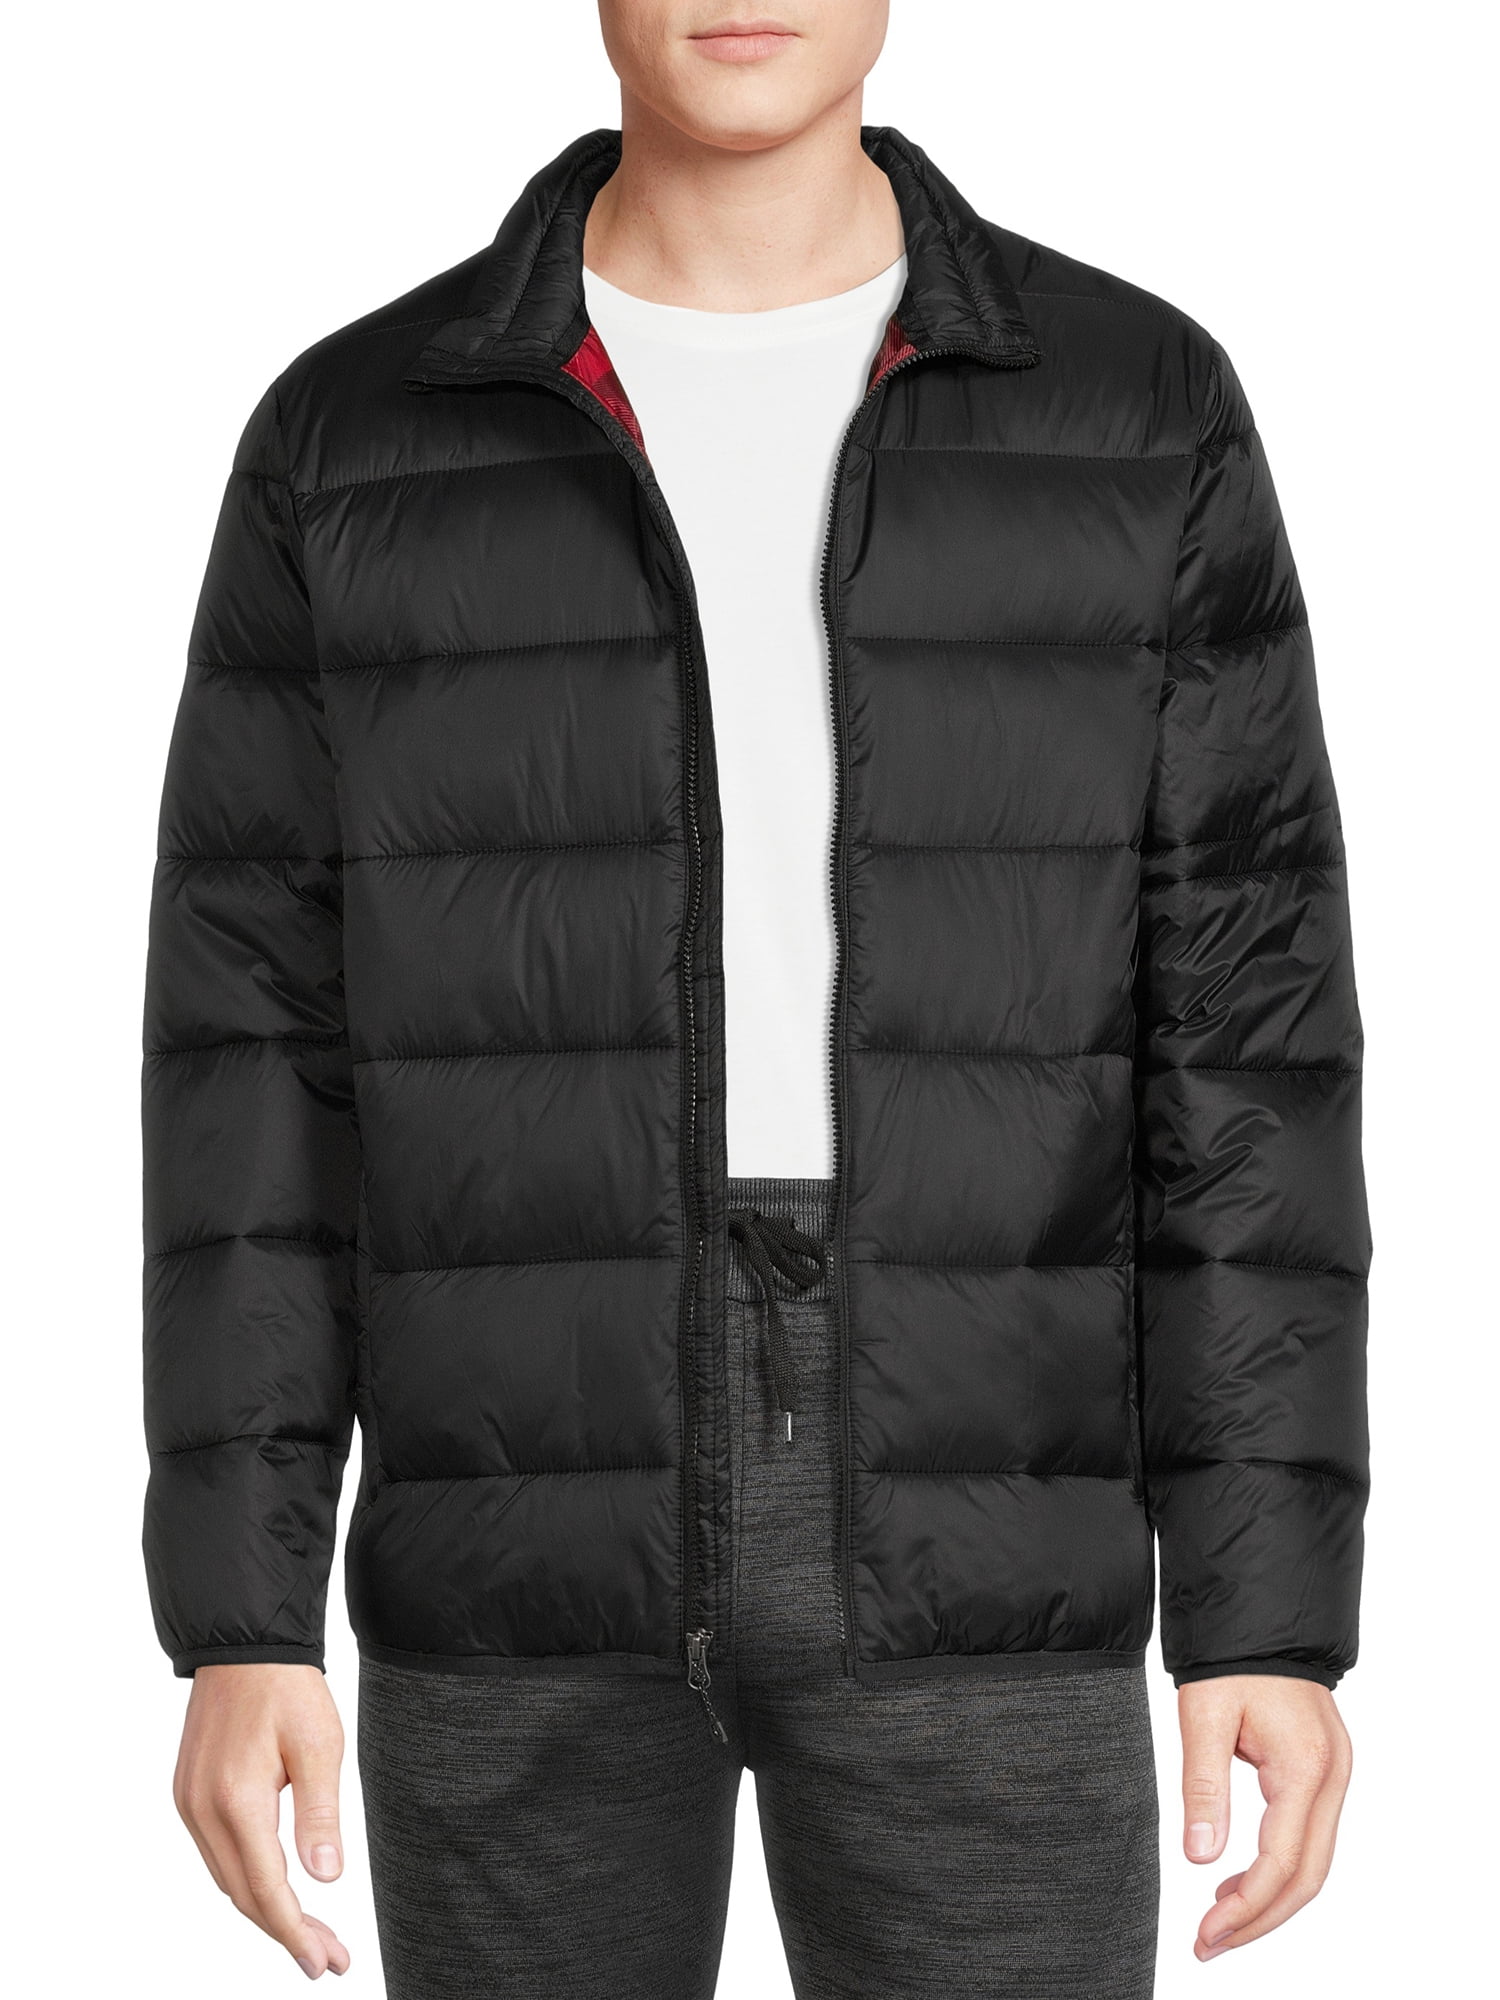 Swiss Tech Men's and Big Men's Puffer Jacket, Up to Size 3XL - Walmart.com